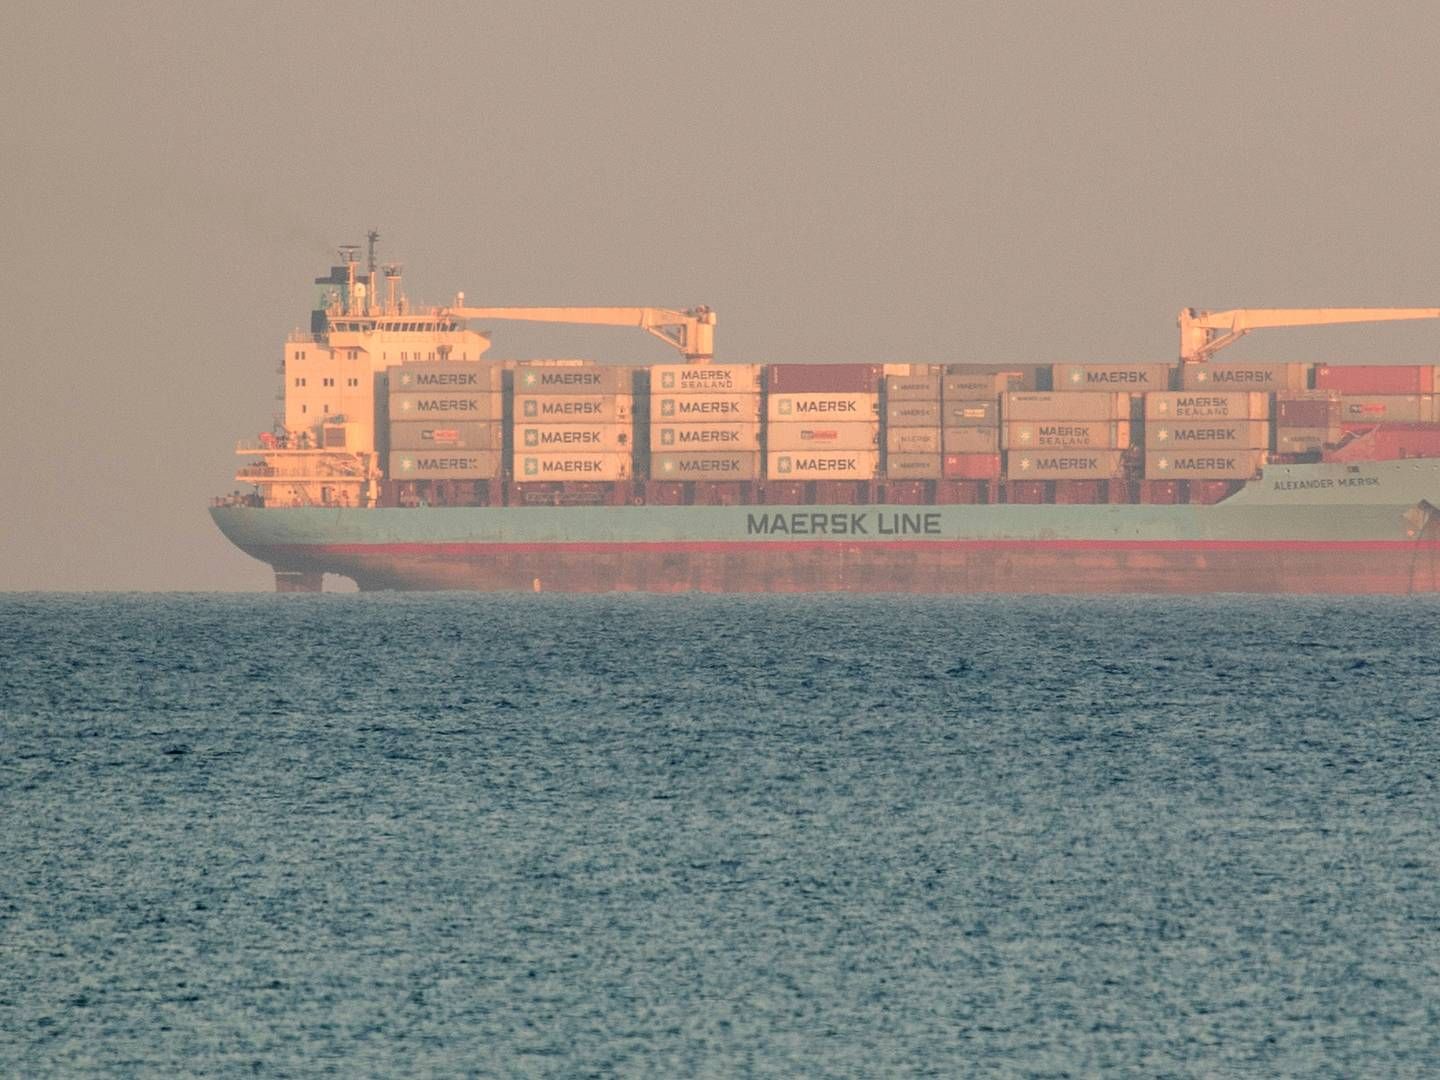 Et Mærsk-containerskib, som dog ikke er et af de omtalte skibe, som får ændret sejlplan på grund af konflikt i Mellemøsten.